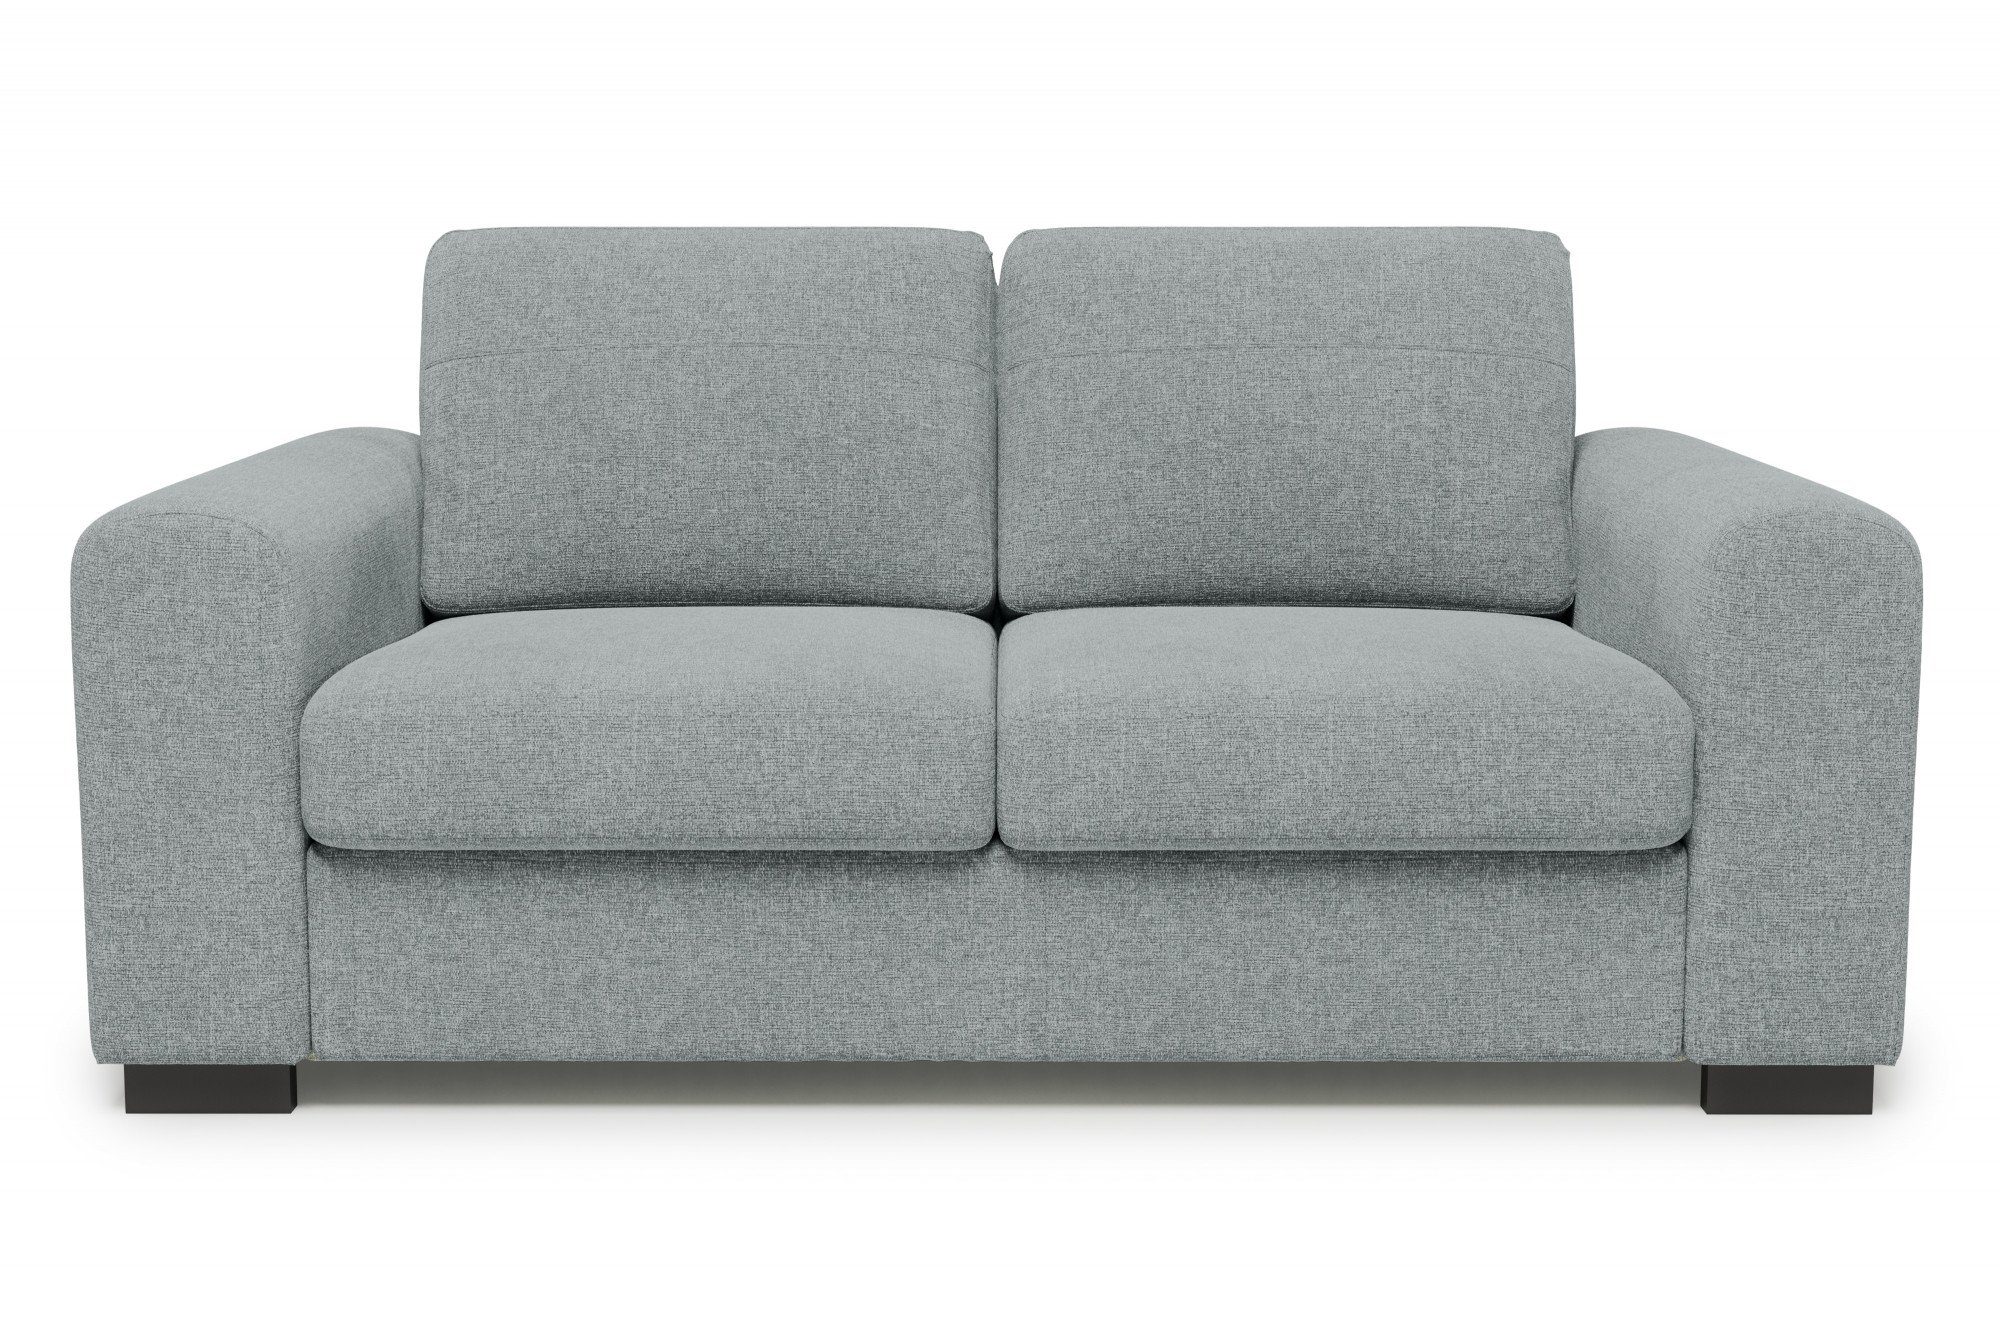 Home affaire 2-Sitzer Laffrey, große Vielfalt an Kombinationen, auch in Lederoptik erhältlich light grey